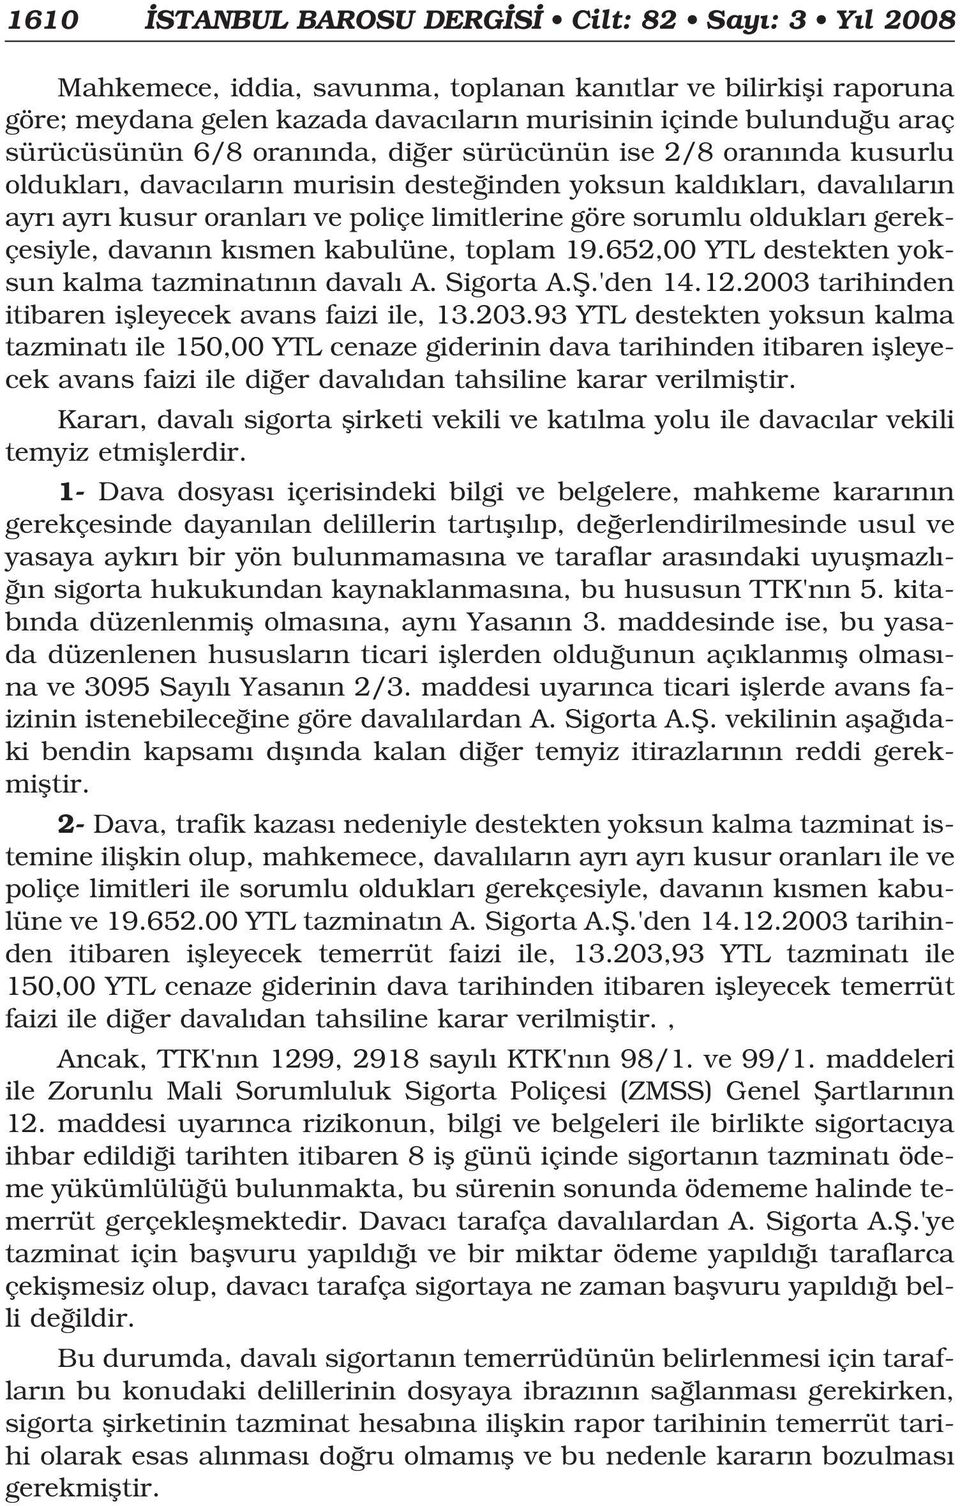 olduklar gerekçesiyle, davan n k smen kabulüne, toplam 19.652,00 YTL destekten yoksun kalma tazminat n n daval A. Sigorta A.fi.'den 14.12.2003 tarihinden itibaren iflleyecek avans faizi ile, 13.203.